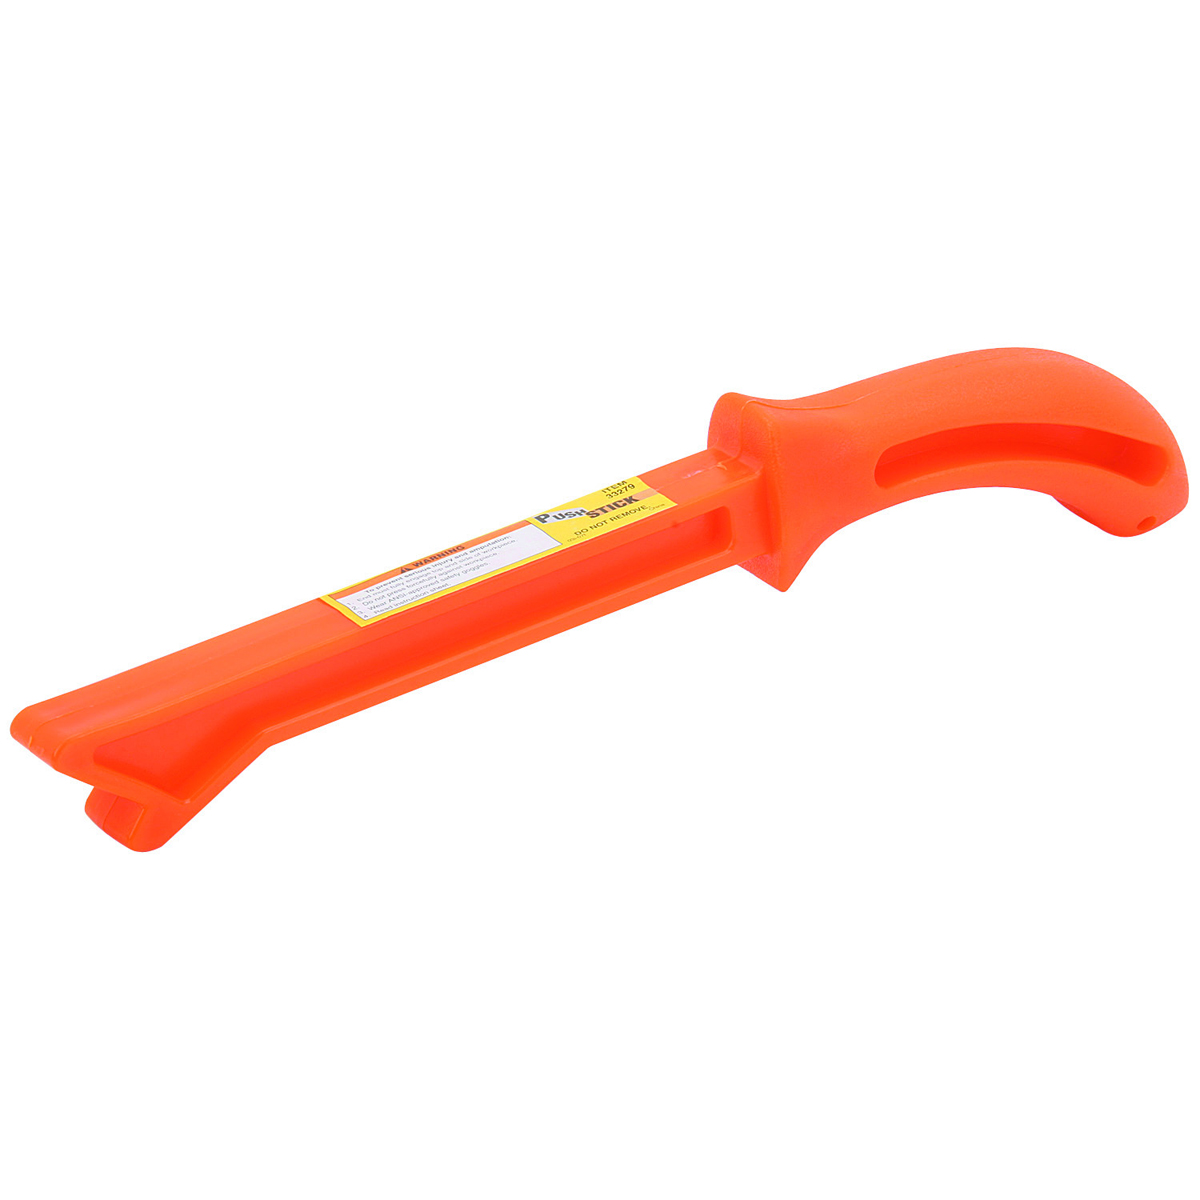 Plastic Push Stick - Item 33279